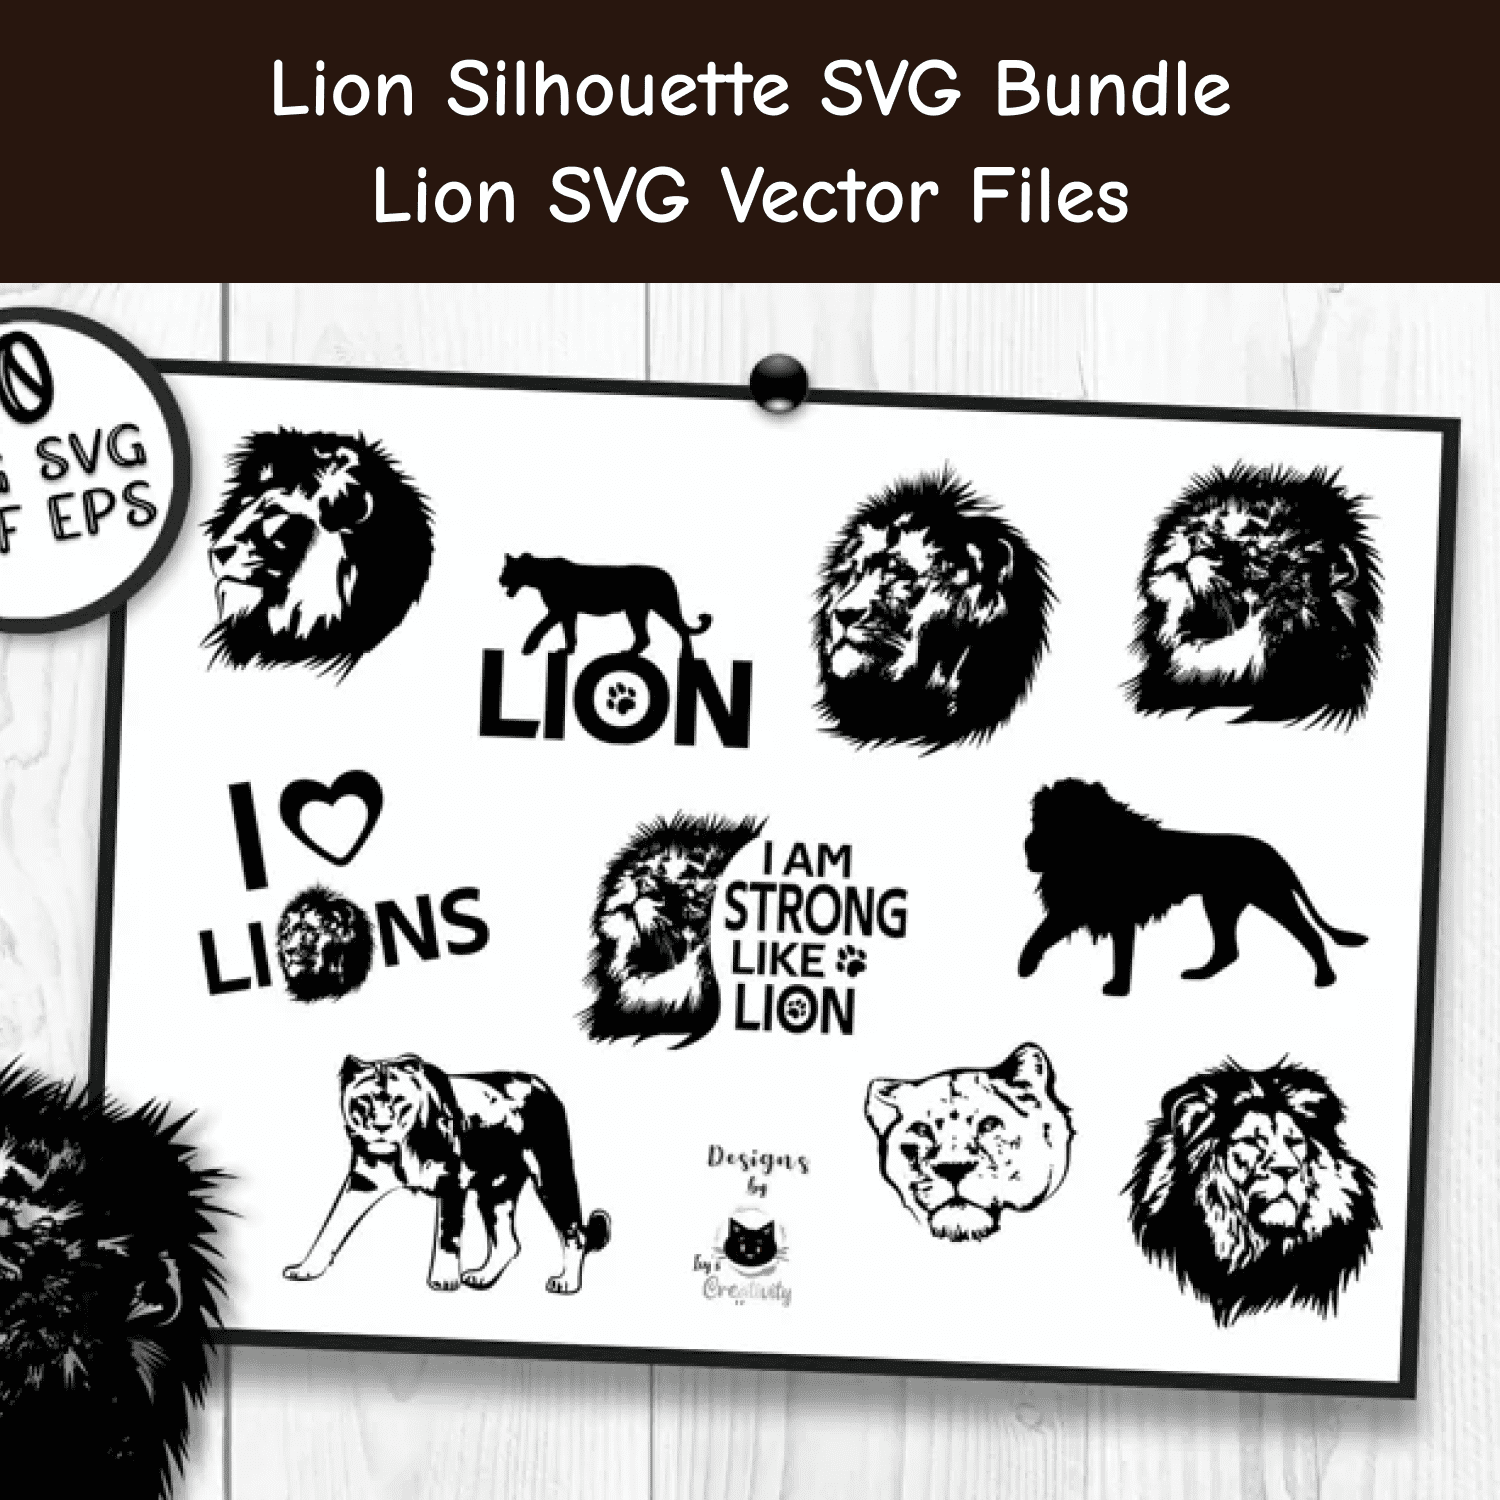 Lion Silhouette SVG Bundle | Lion SVG Vector Files main cover.